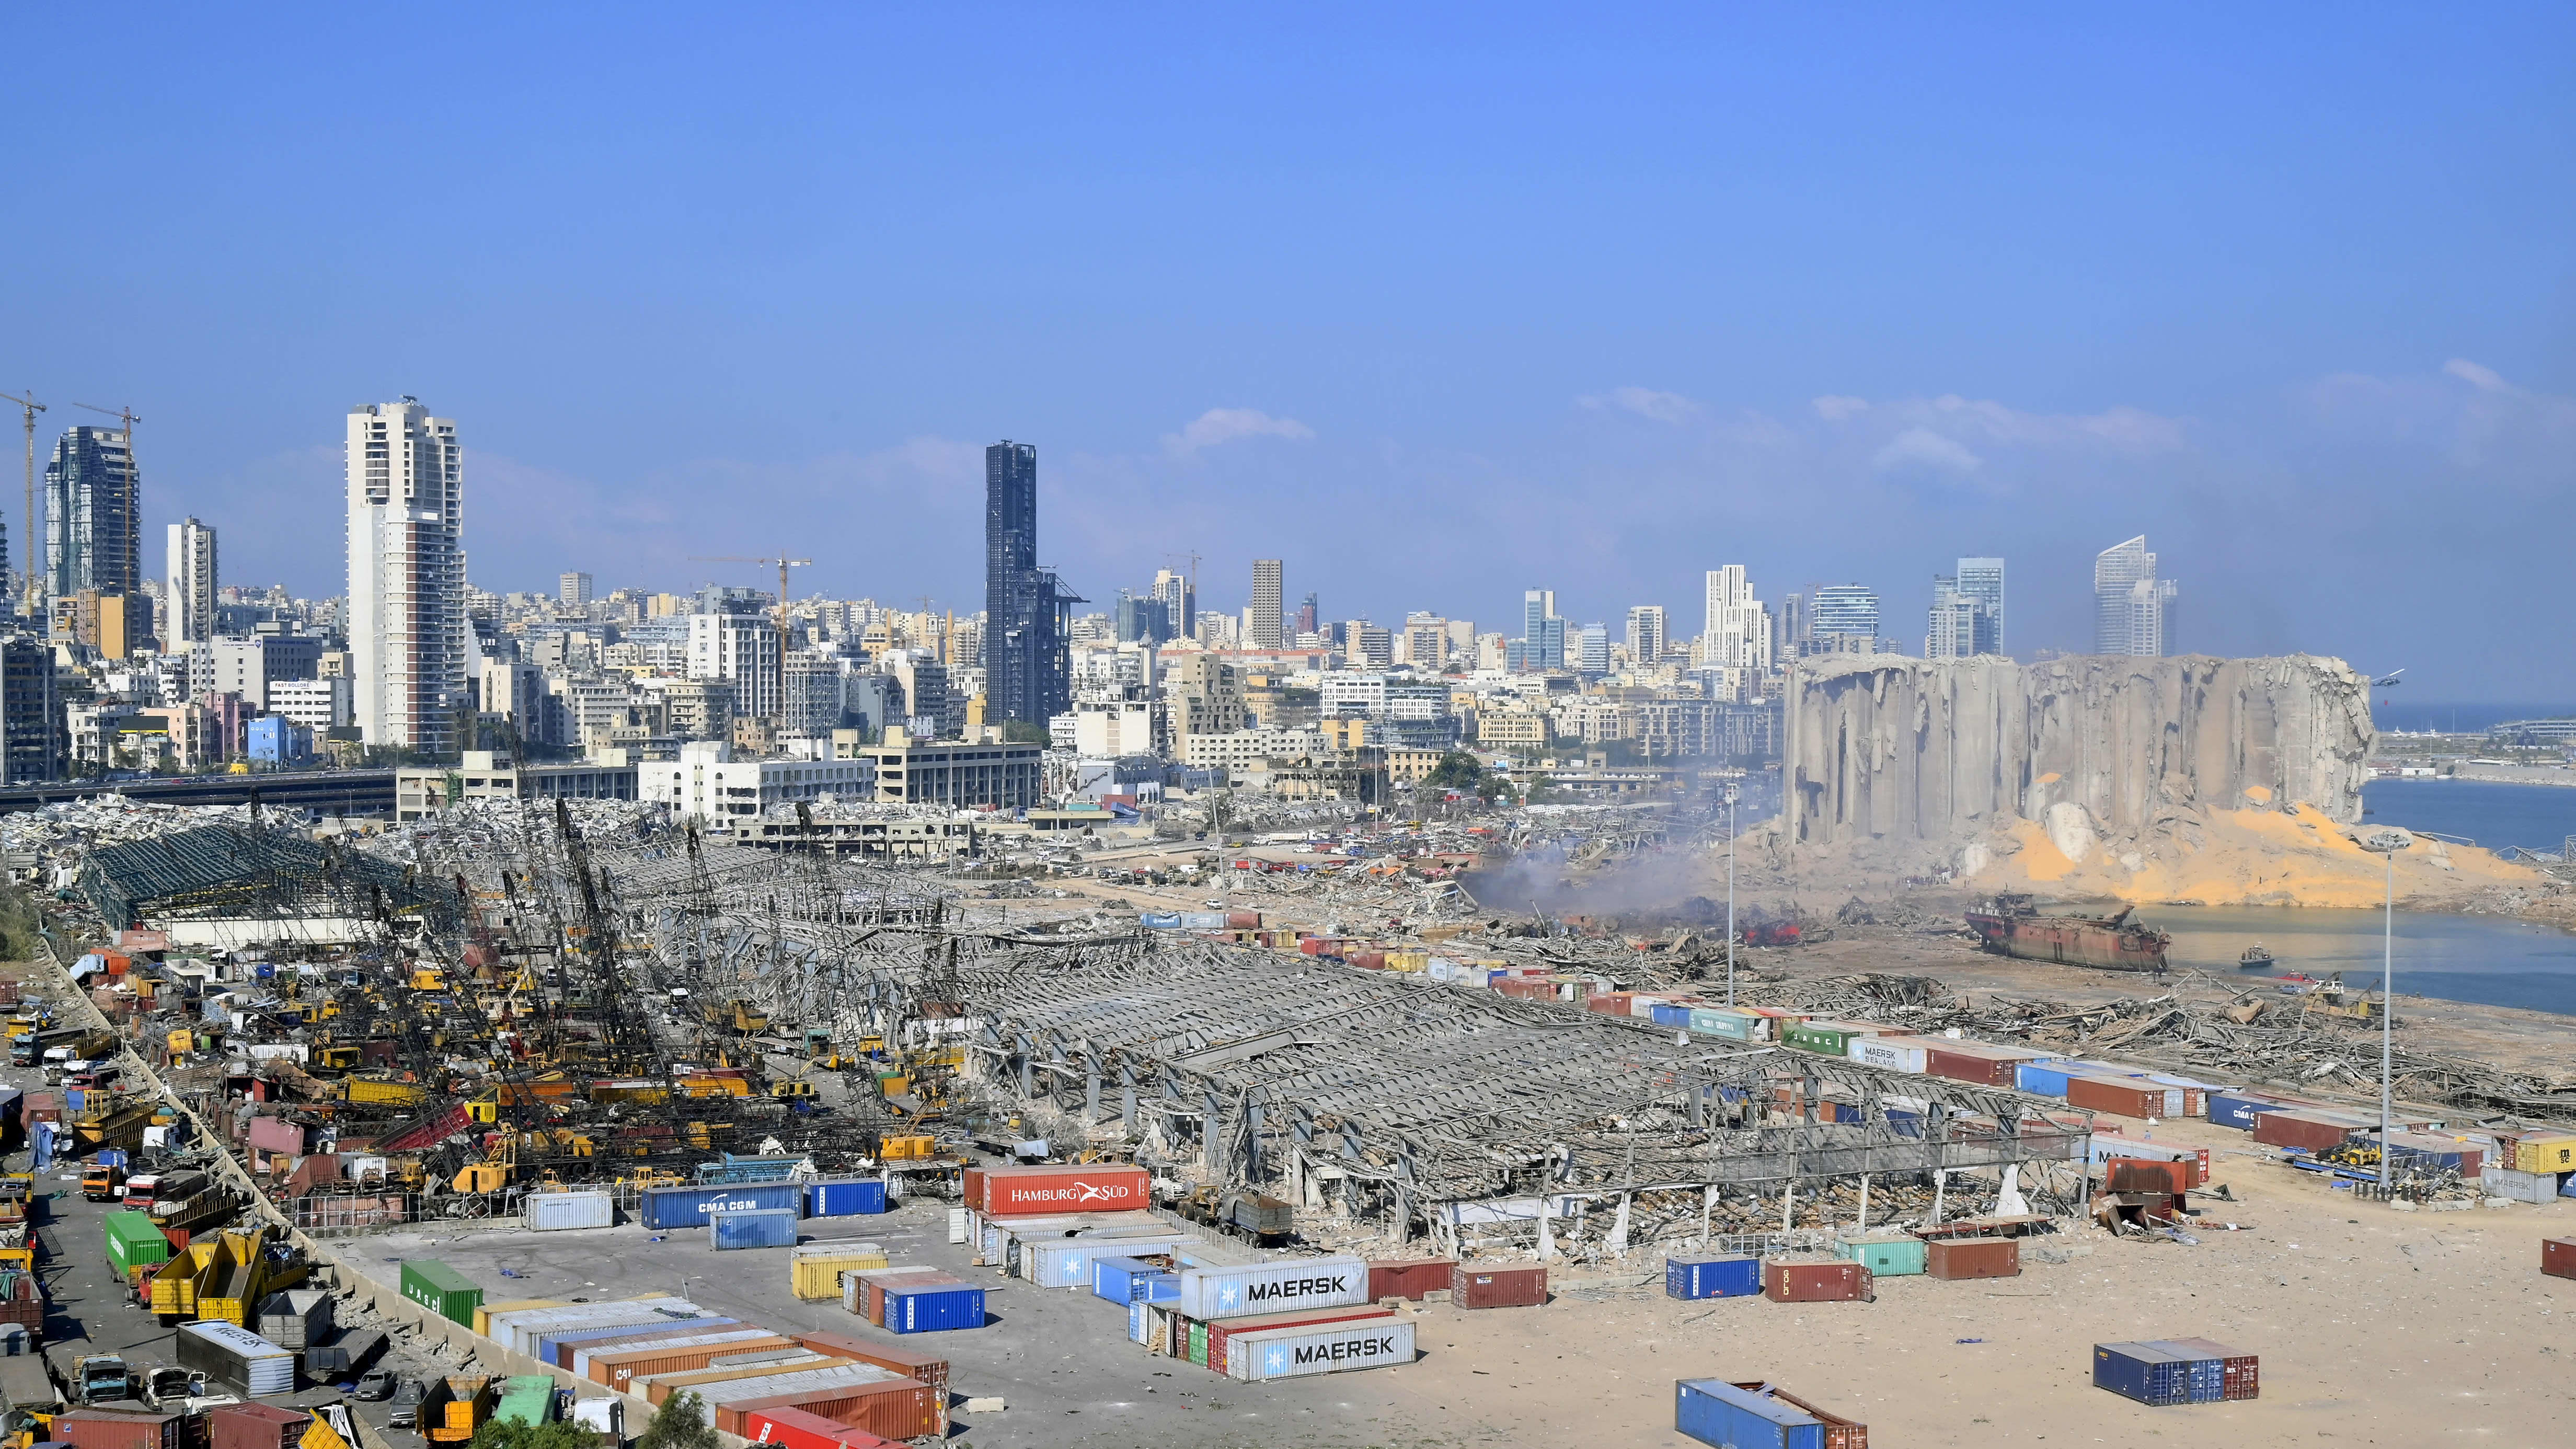 Beirutin satama on tärkeä Libanonille ja koko alueelle. Se vaurioitui pahasti tiistain räjähdyksessä.